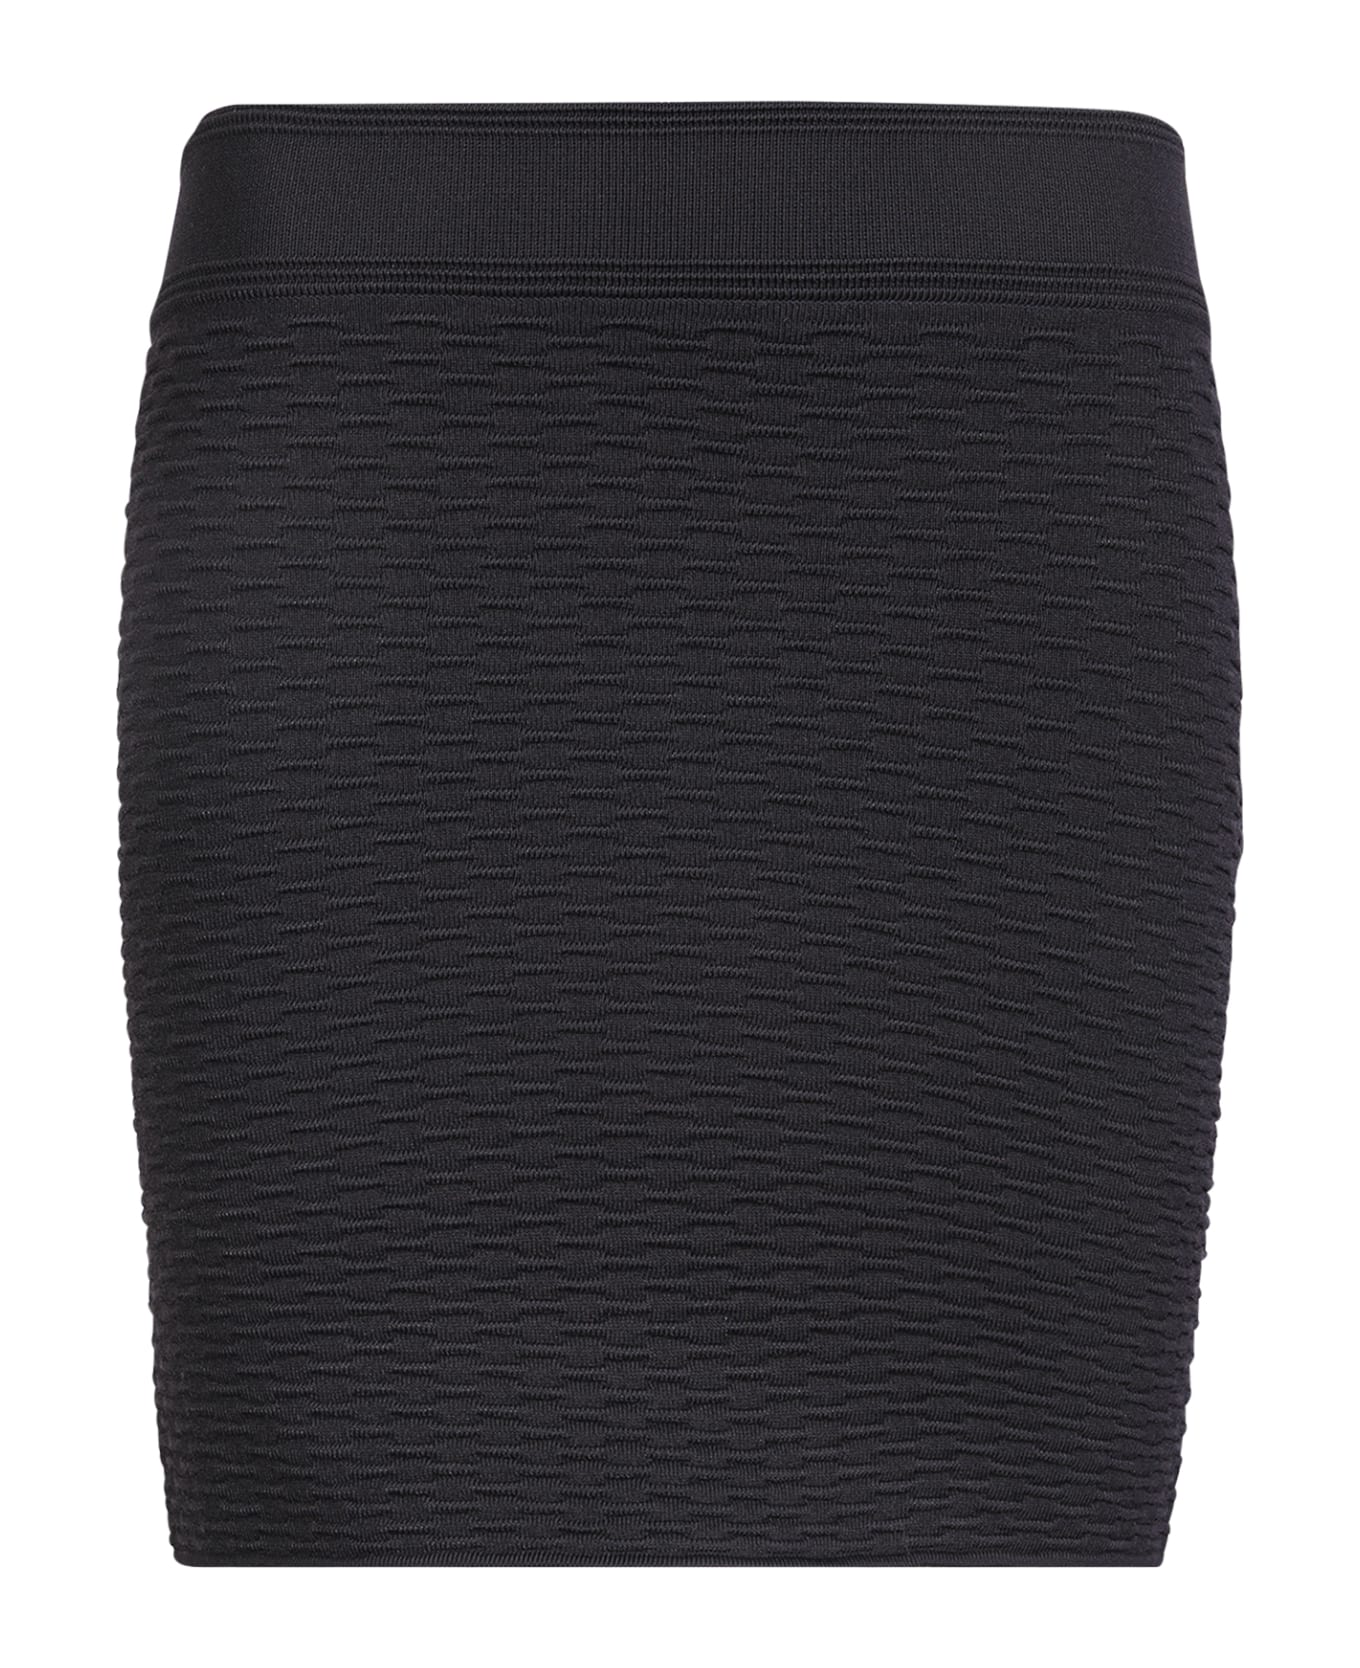 IRO Mini Skirt Black - Black